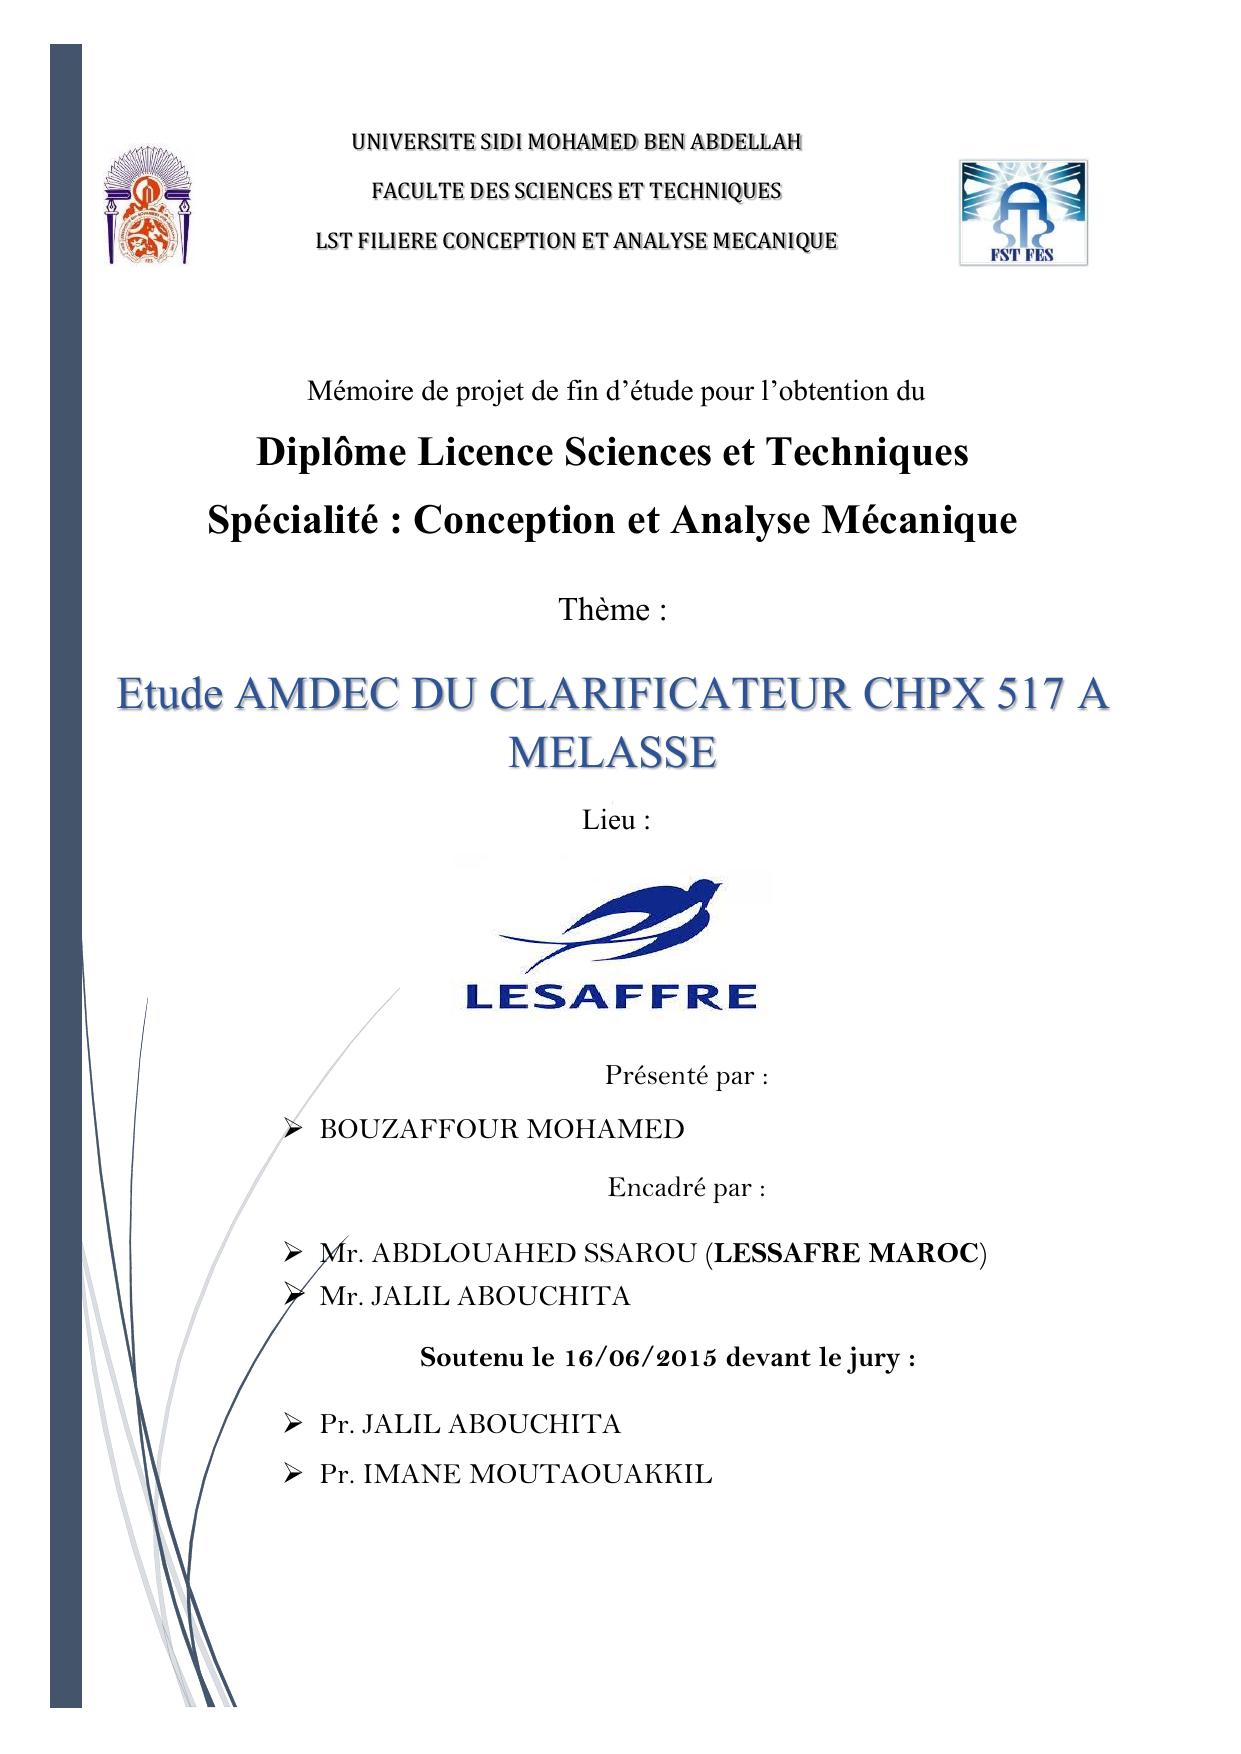 Etude AMDEC DU CLARIFICATEUR CHPX 517 A MELASSE